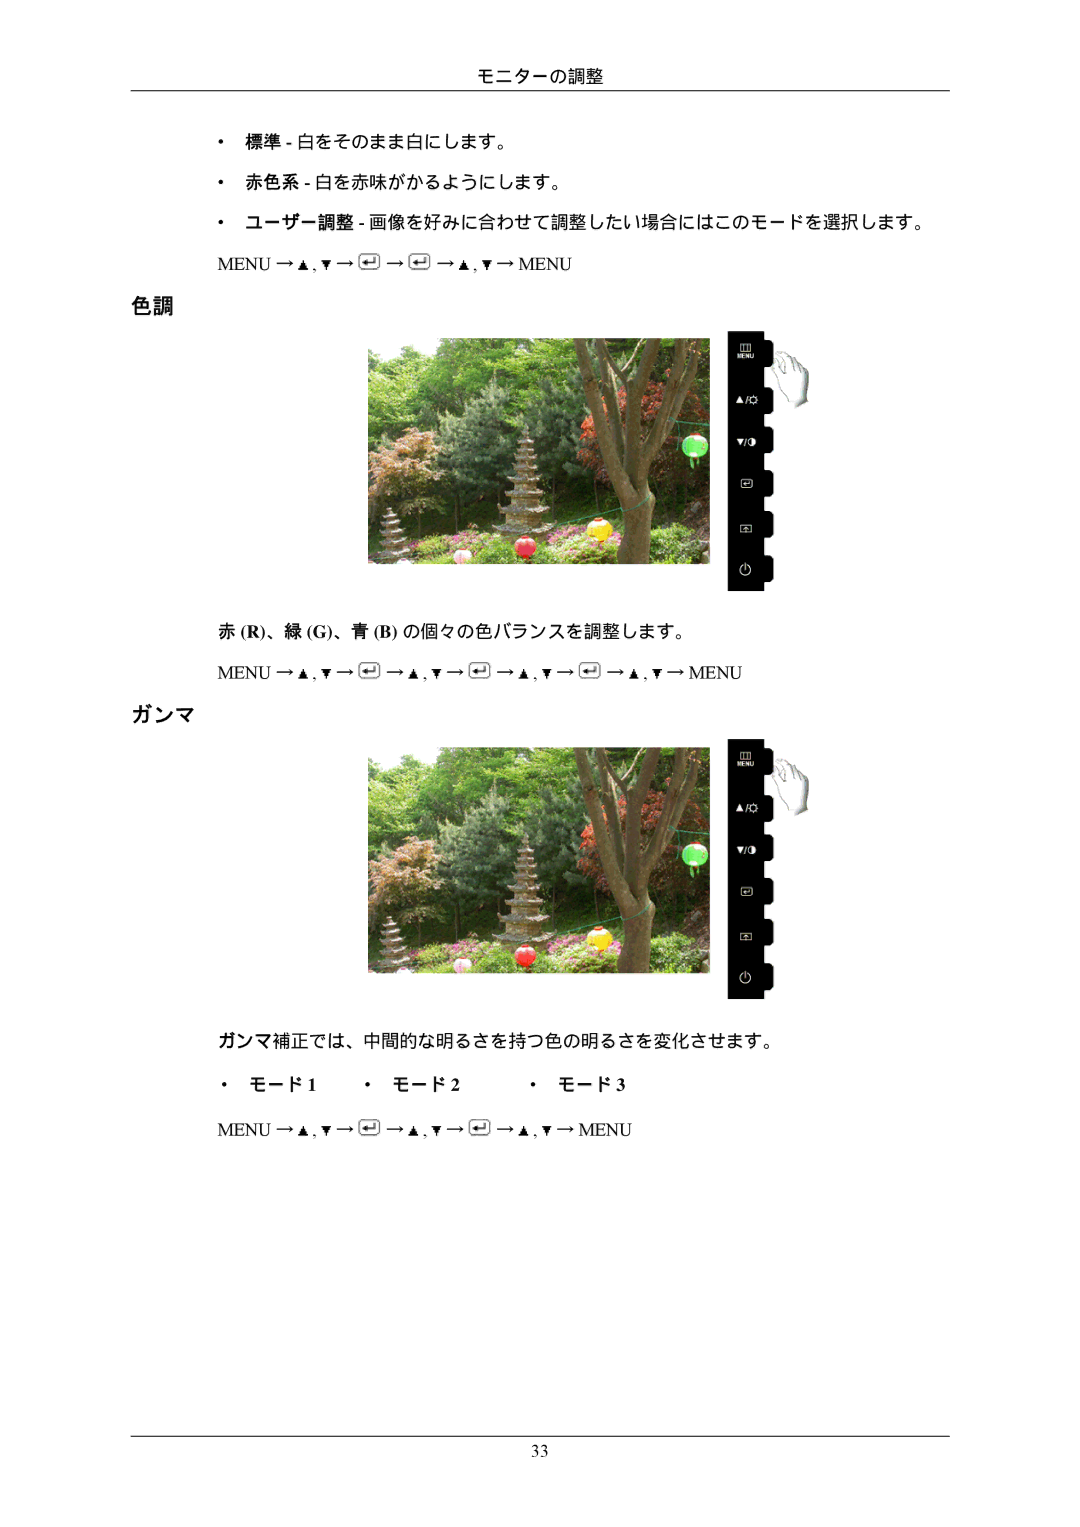 Samsung LS22CMFKFV/XJ, LS22CMEKFV/XJ manual ガンマ, Menu → , → → → , → Menu, Menu → , → → , → → , → Menu 